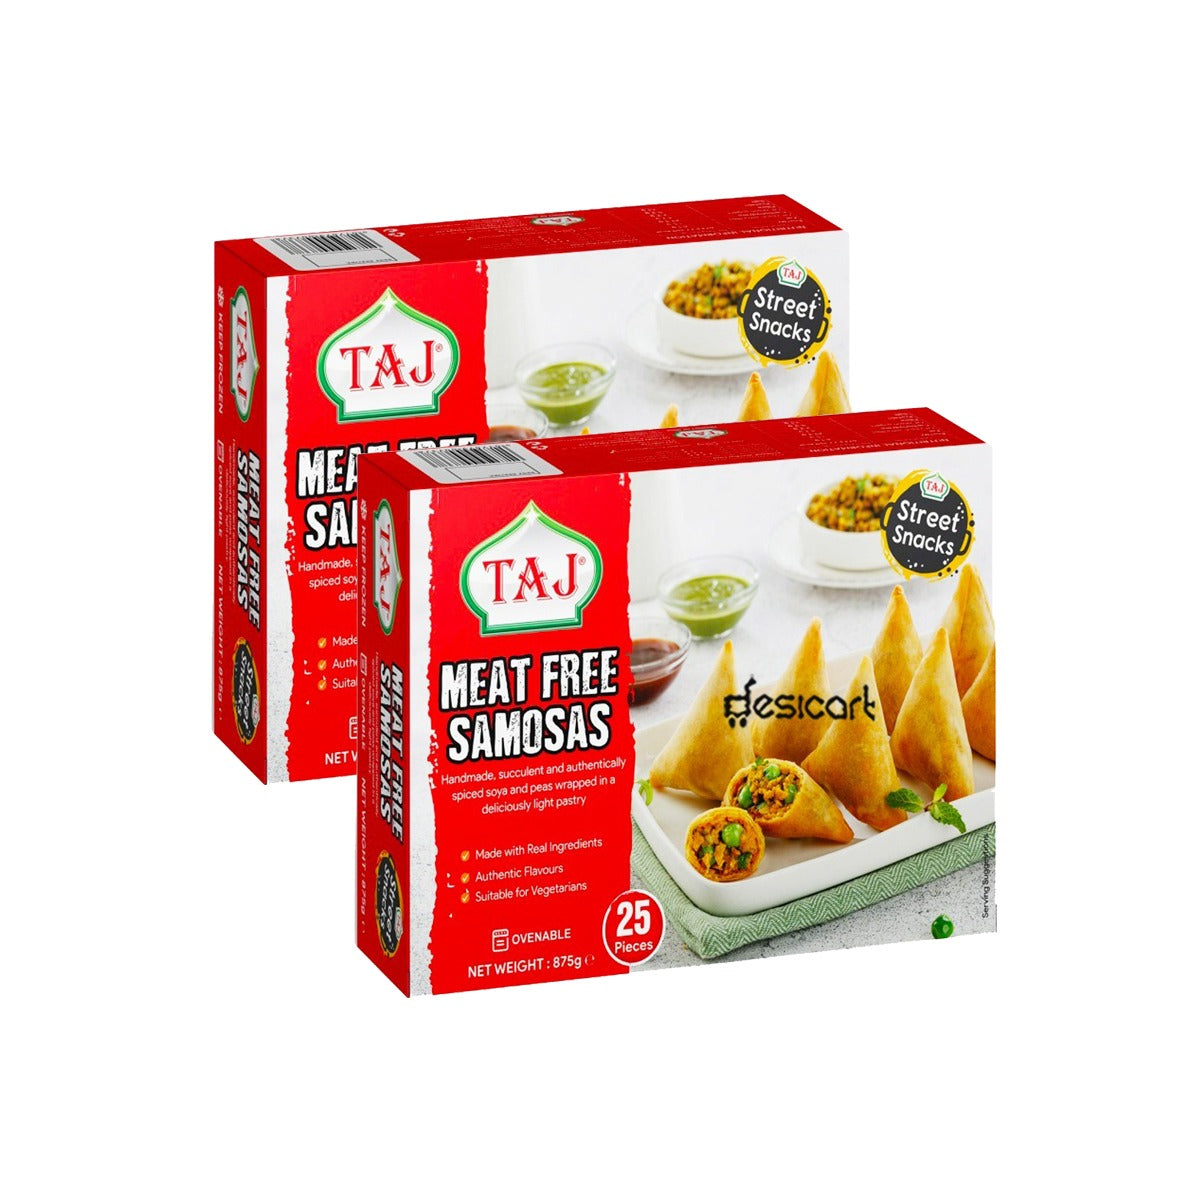 Taj Meat Free Samosa (Pack of 2)875g